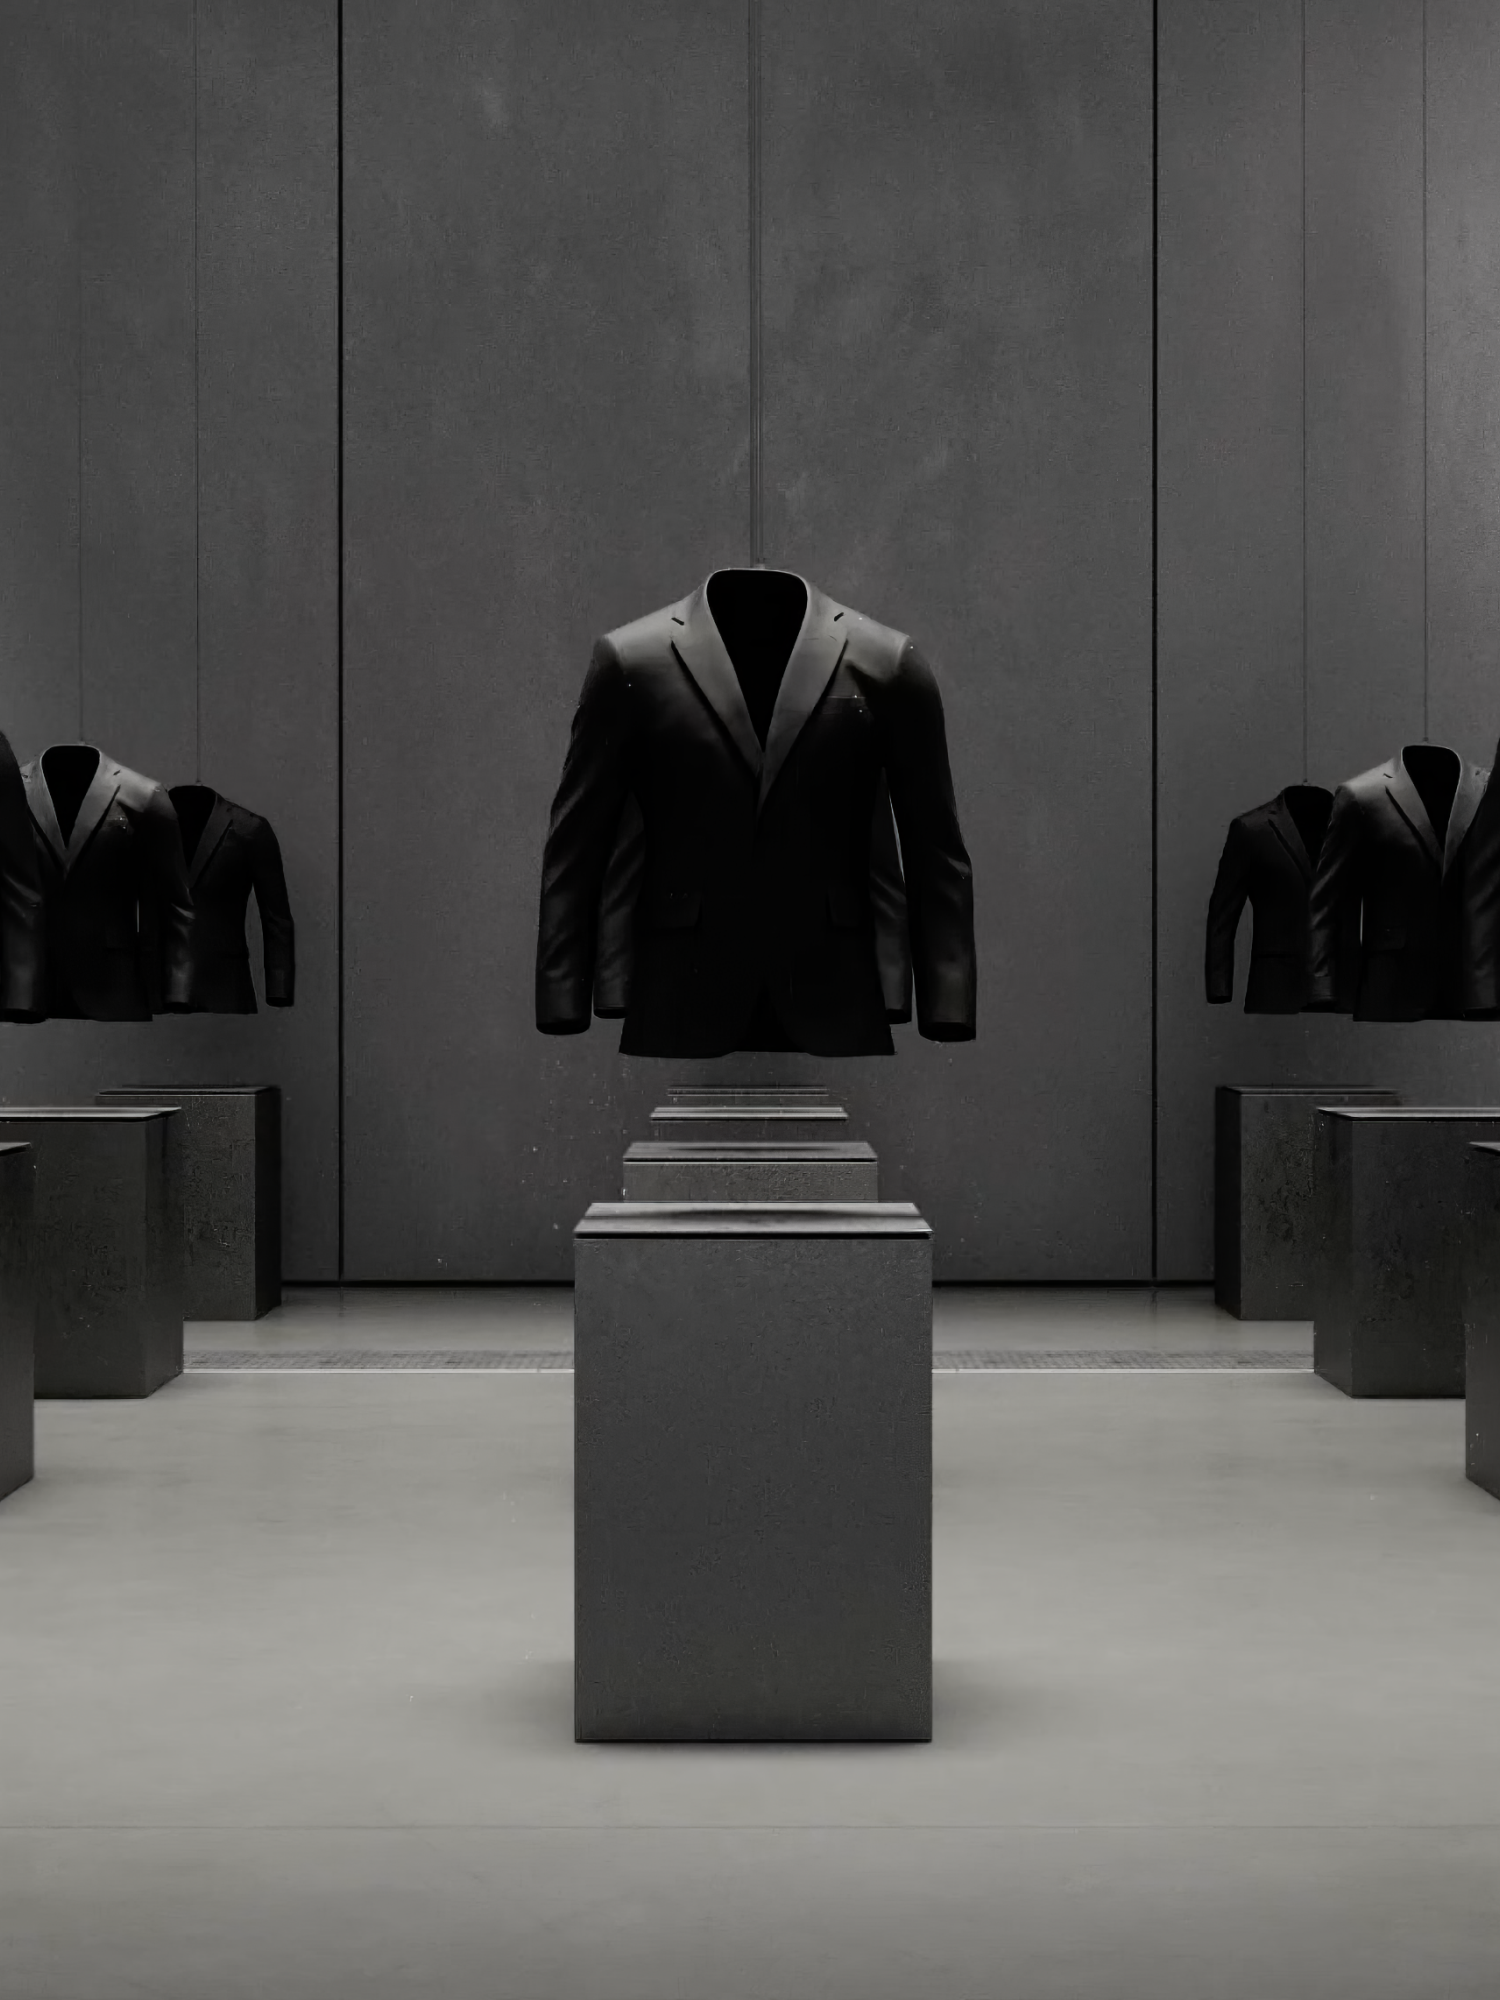 2 rows of black blazers on pedestals in a big grey room